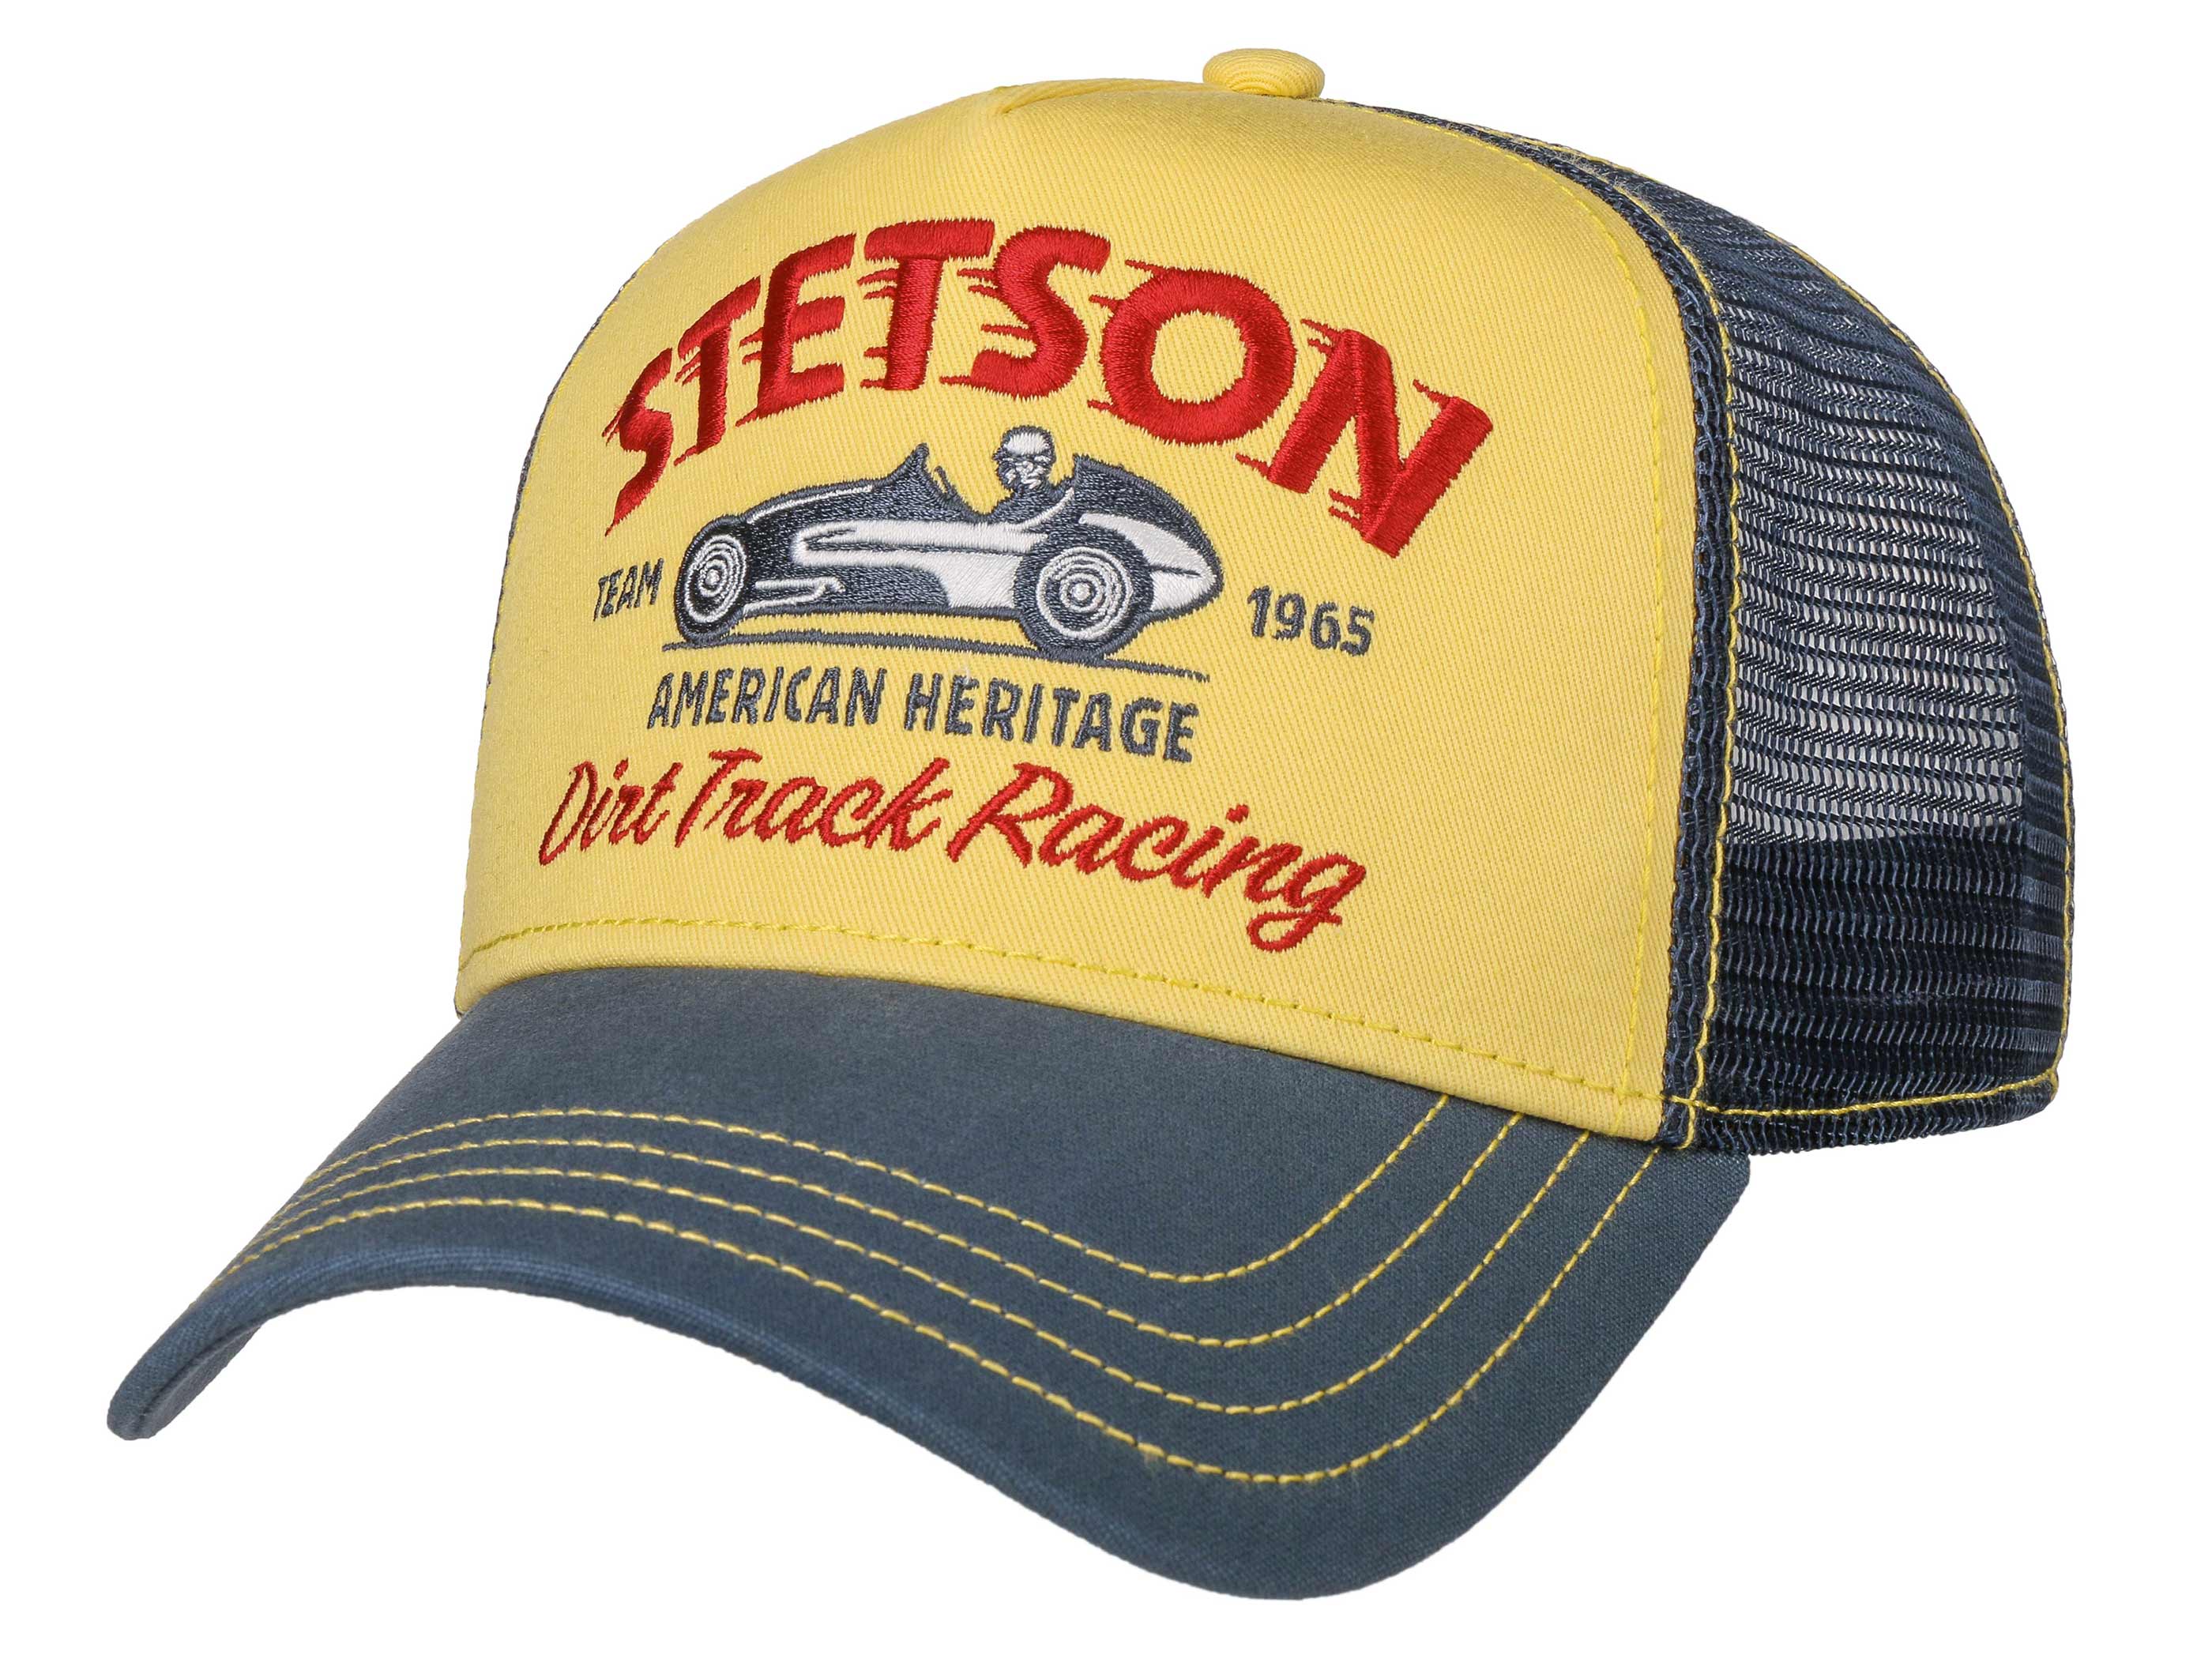 Stetson Trucker Cap Dirt Track Racing Baseball Cap mit Netzeinsatz